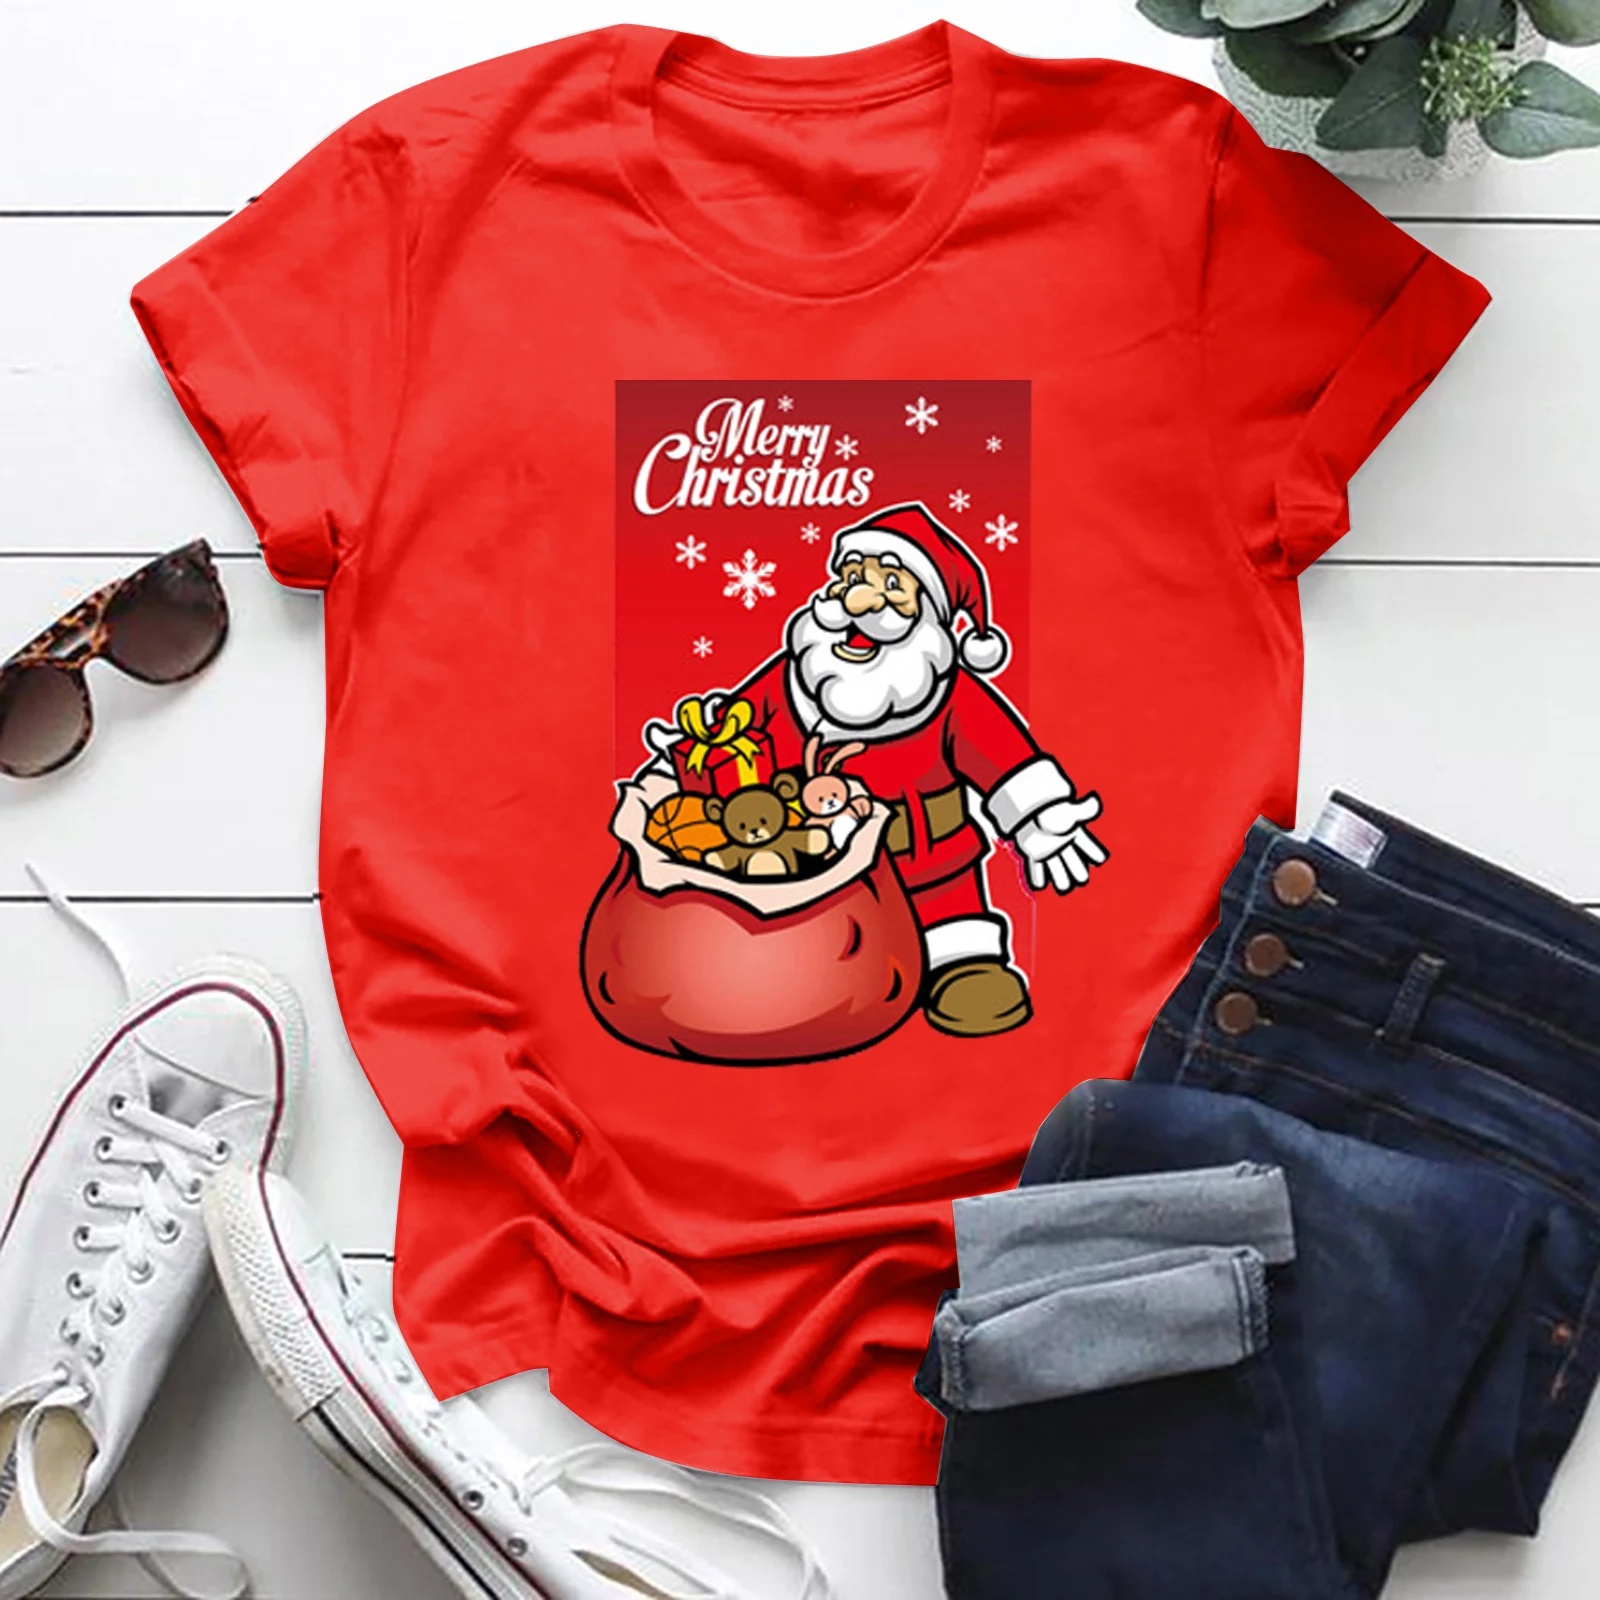 

Женская футболка с принтом Санта Клауса, летняя футболка с мультяшным рисунком, женская футболка с графическим рисунком, Рождественская фу...